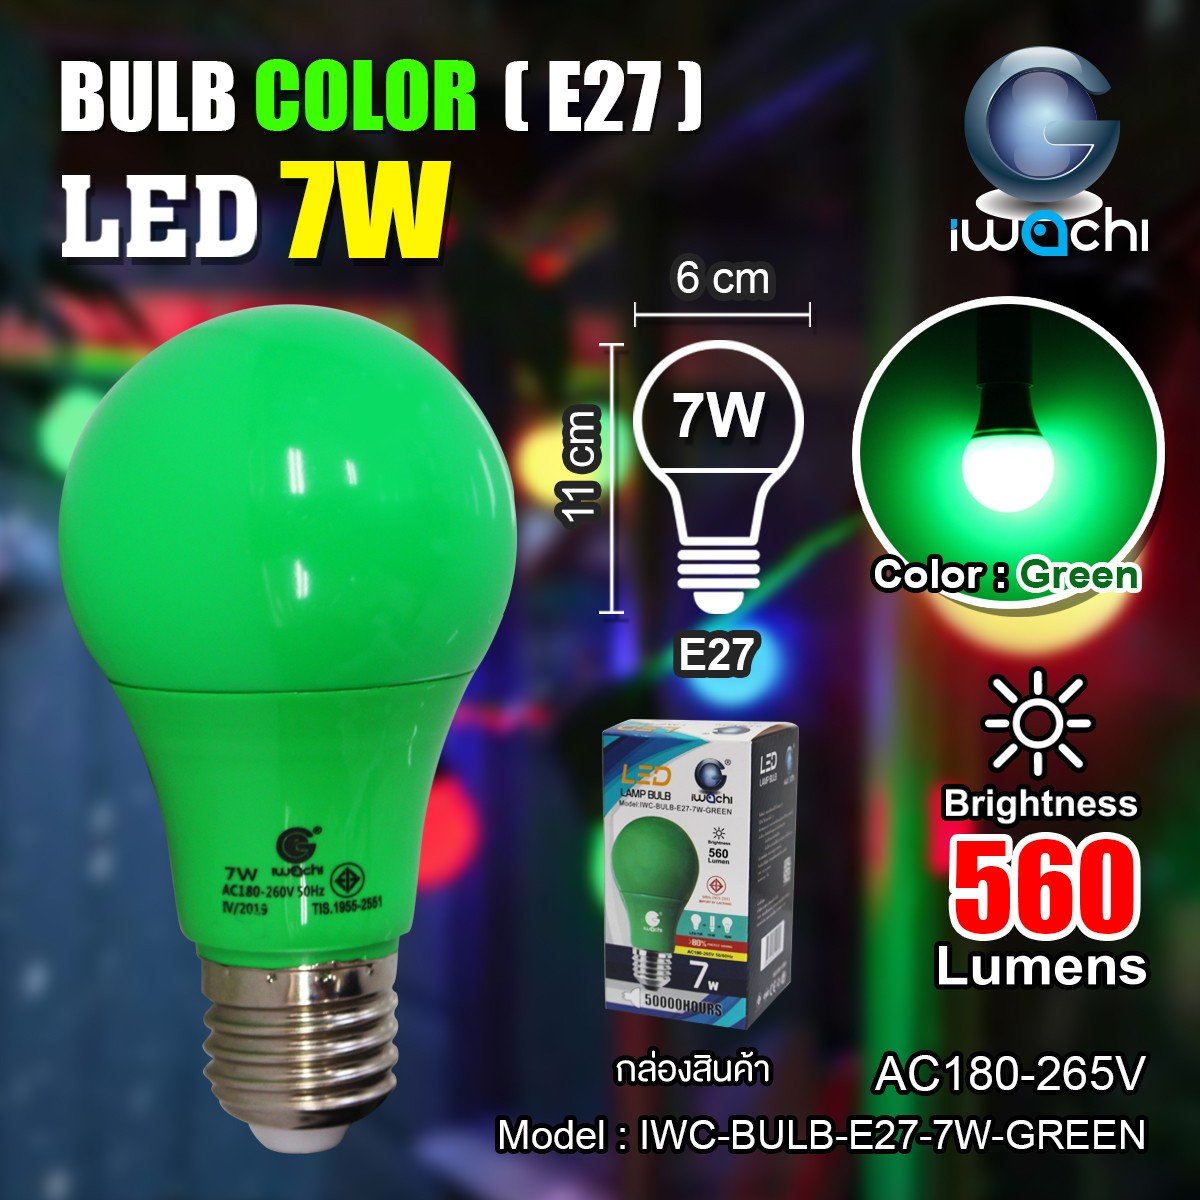 หลอดLED 7W เกลียว E27 หลอดปิงปองสี BULB  หลอดไฟ LED 7W ขั้วE27 หลอดไฟพกพา หลอดไฟอเนกประสงค์ Lamps Lighting LightBulbหลอดปิงปองสี 7W ขั้วE27 (มี 5 สี)